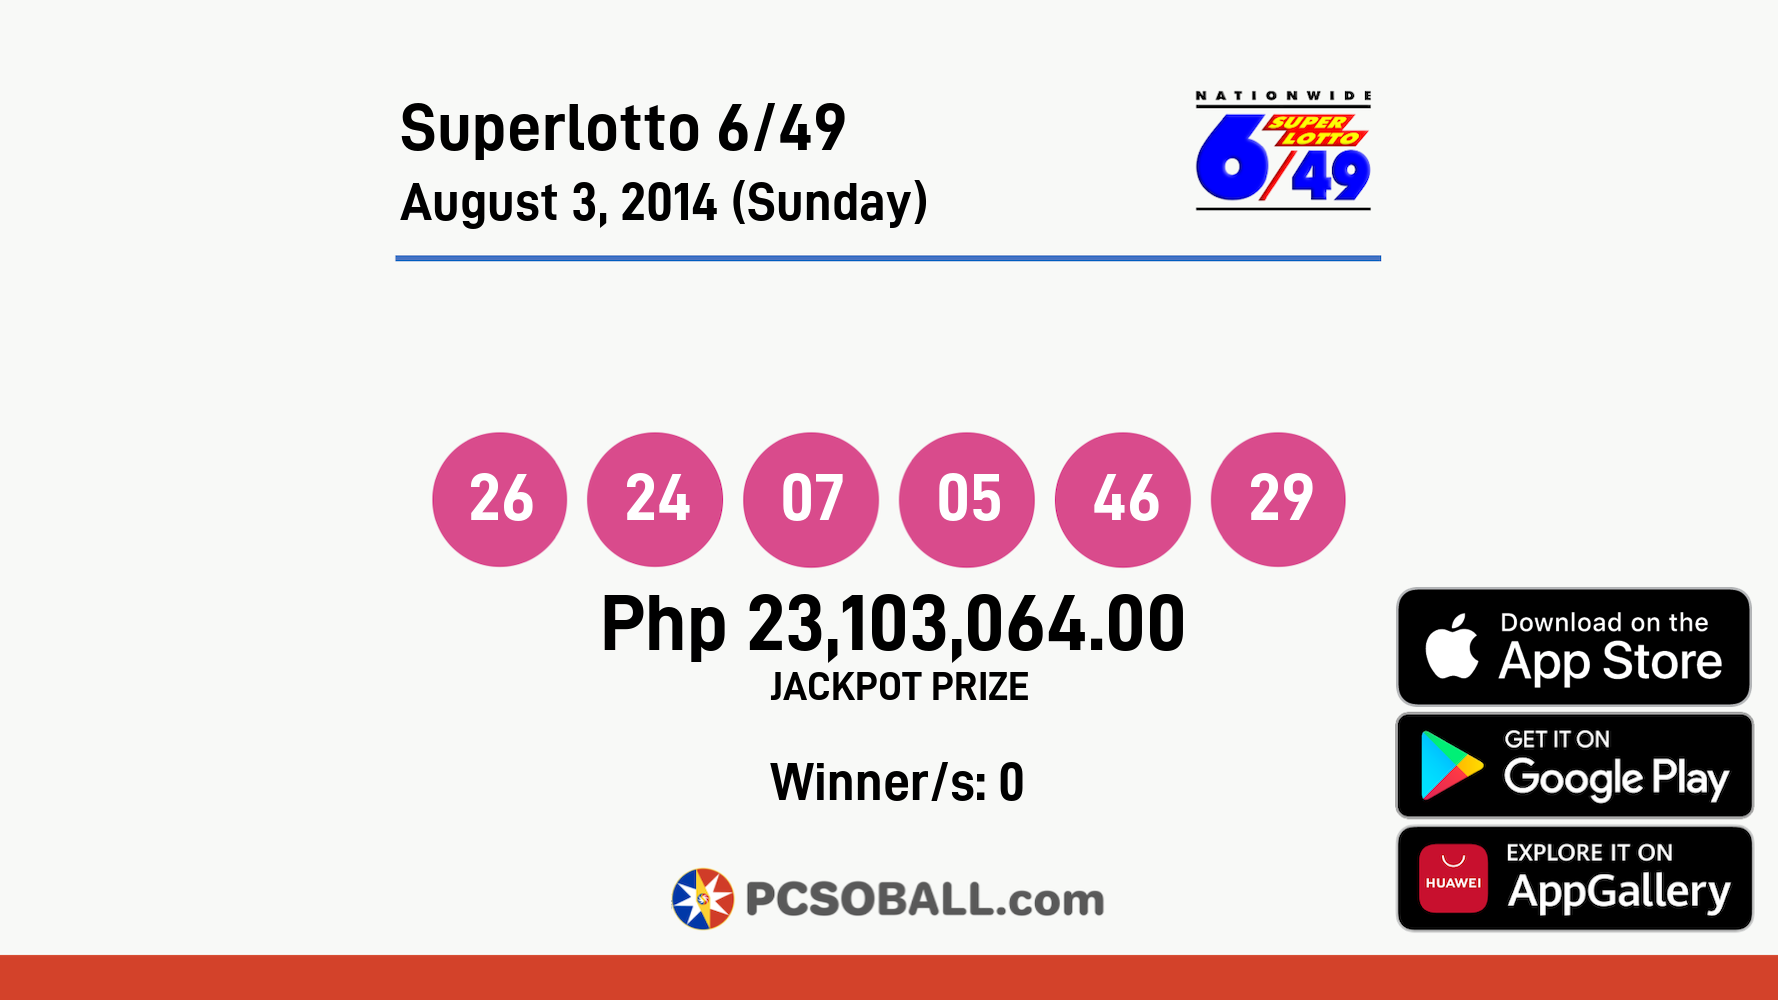 Superlotto 6/49 August 3, 2014 (Sunday) Result